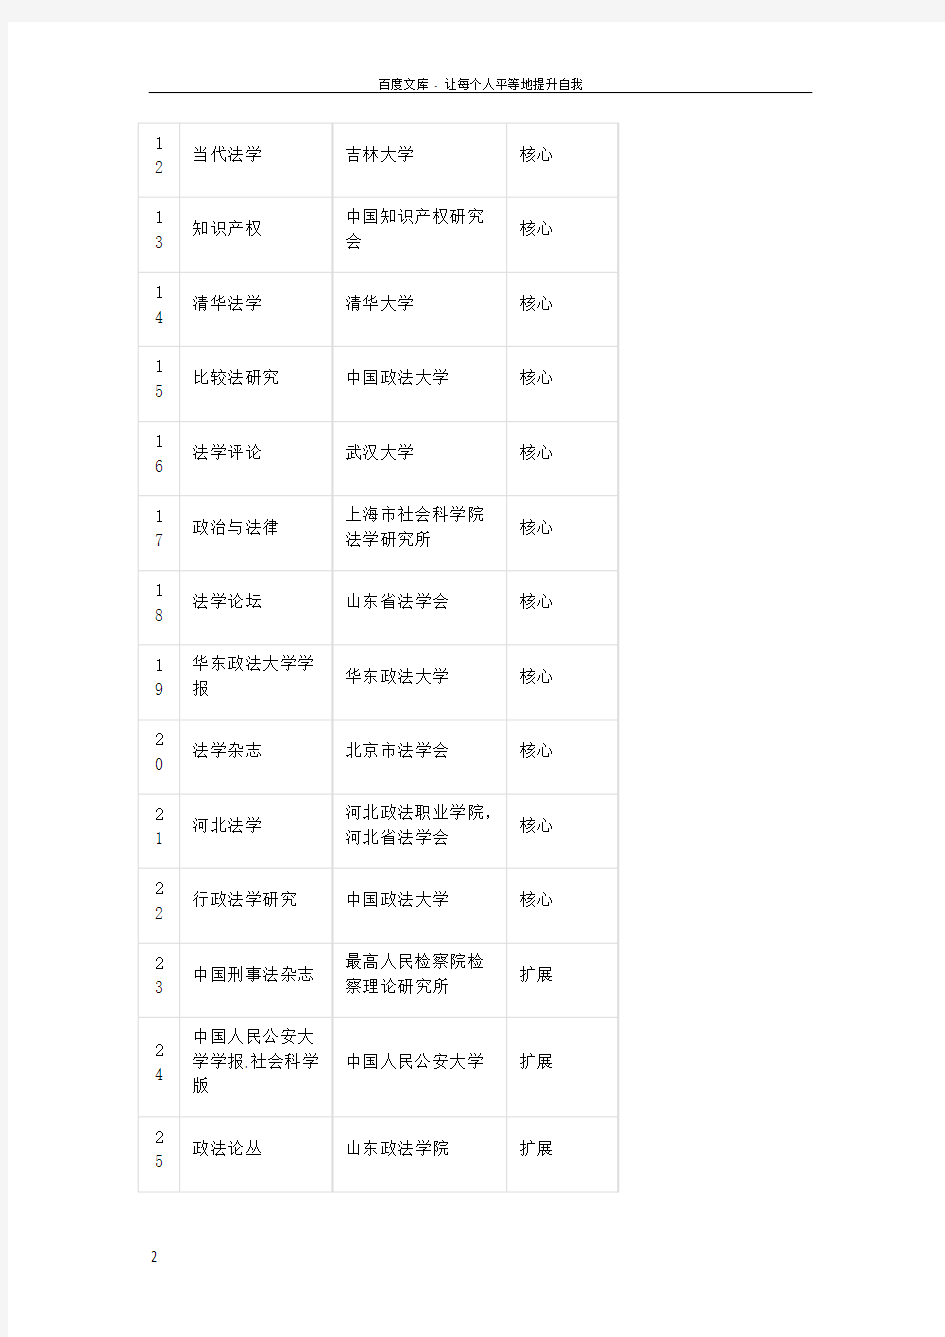 中国人文社科核心期刊目录(2014最新最全)